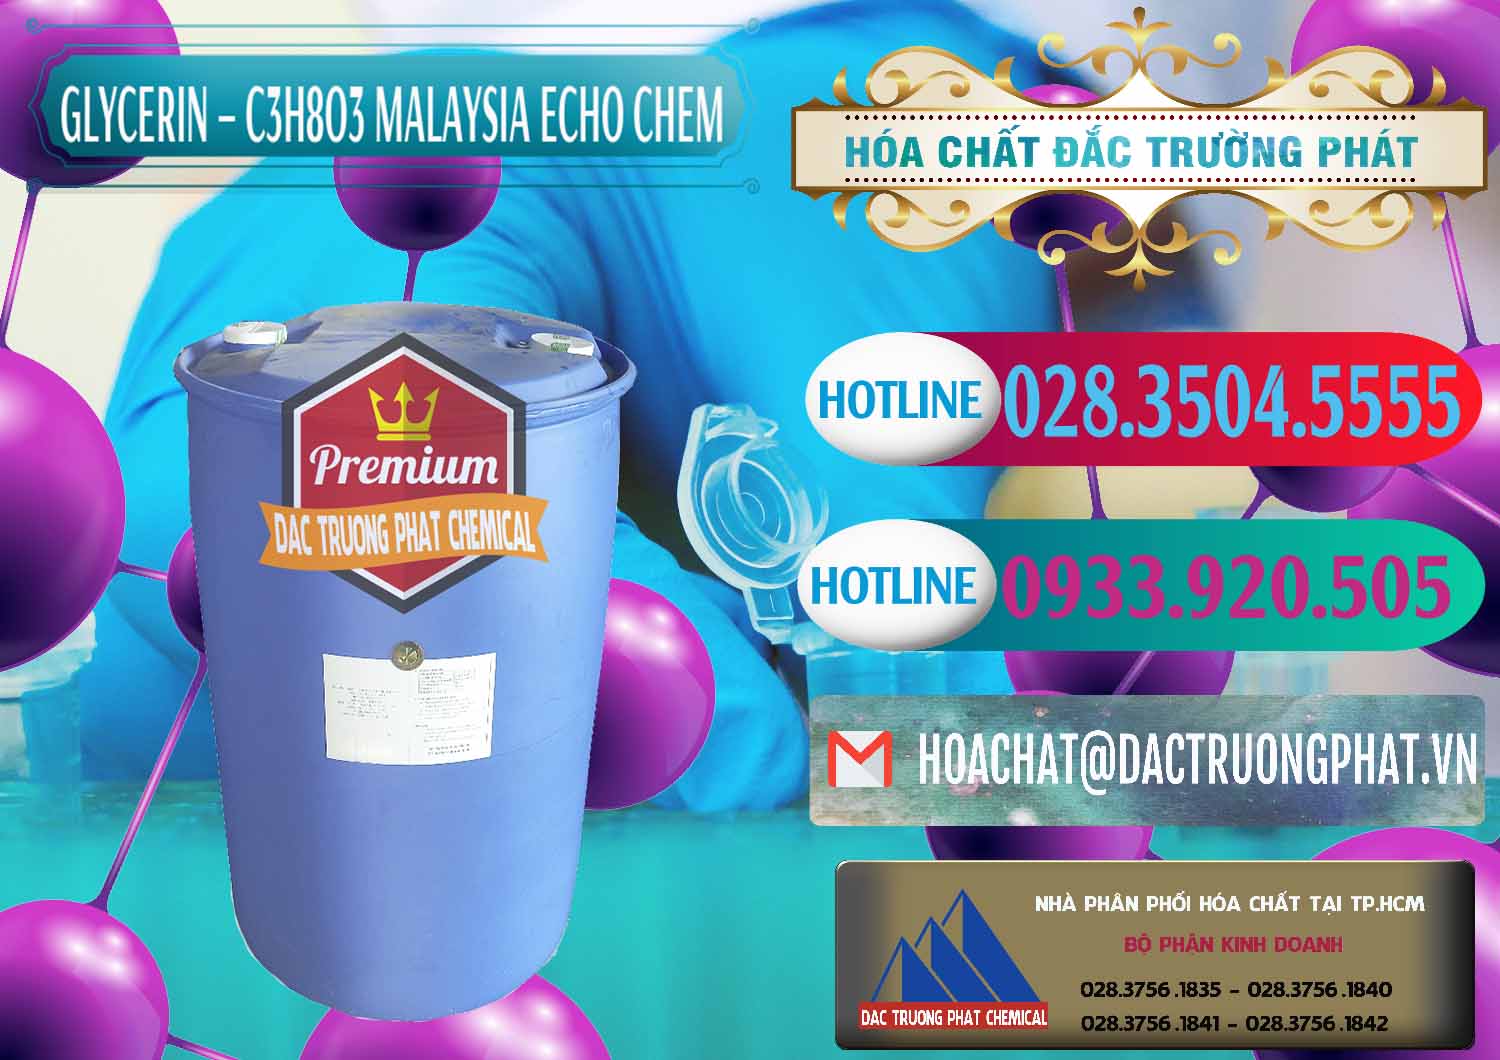 Chuyên cung ứng ( bán ) C3H8O3 - Glycerin 99.7% Echo Chem Malaysia - 0273 - Công ty nhập khẩu & phân phối hóa chất tại TP.HCM - truongphat.vn